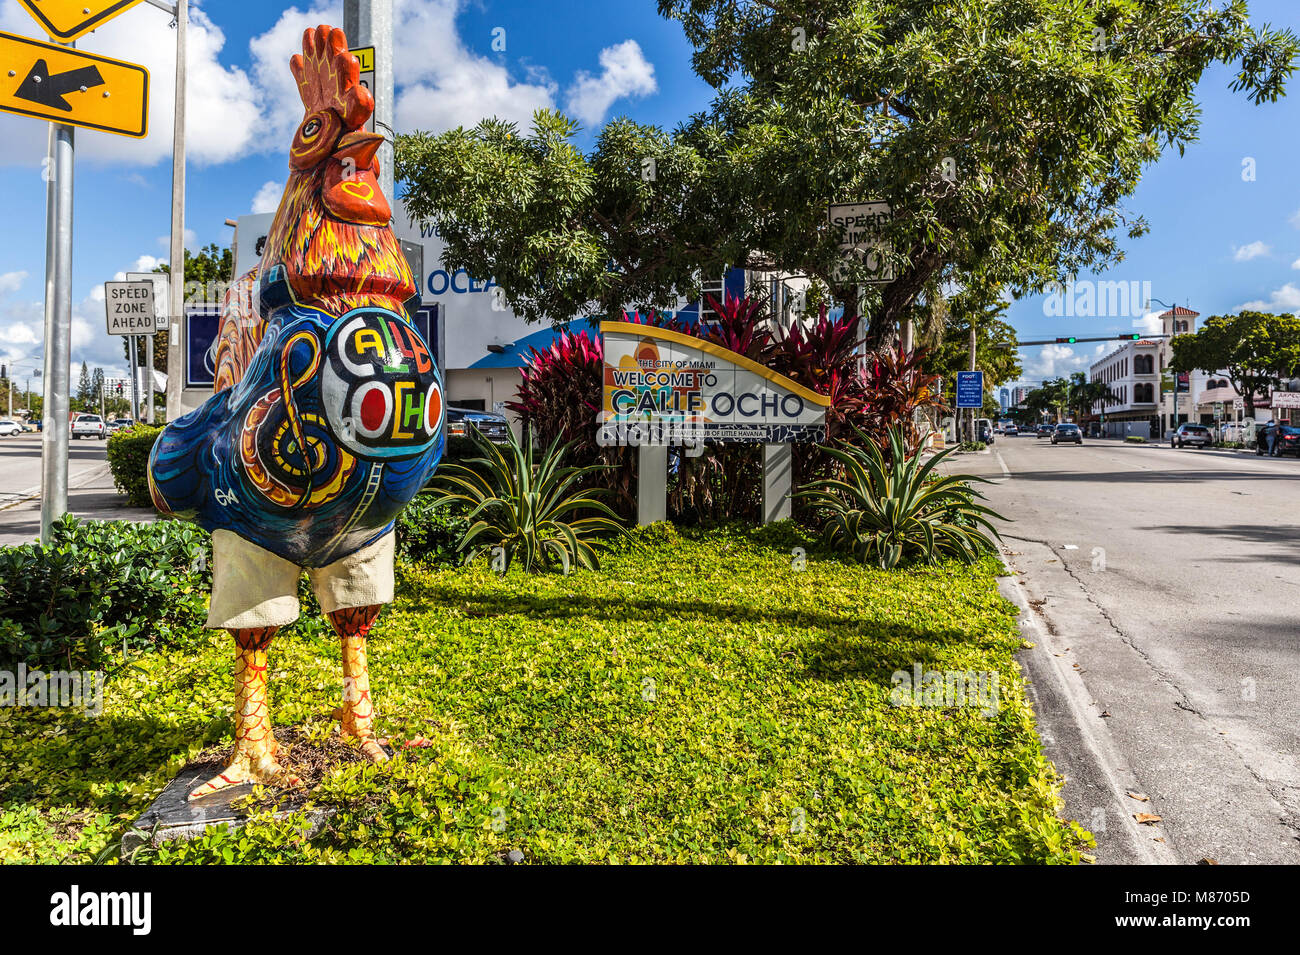 Grand coq et de sculpture sur le bord de la route, Calle Ocho, Little Havana, Miami, Floride, USA. Banque D'Images